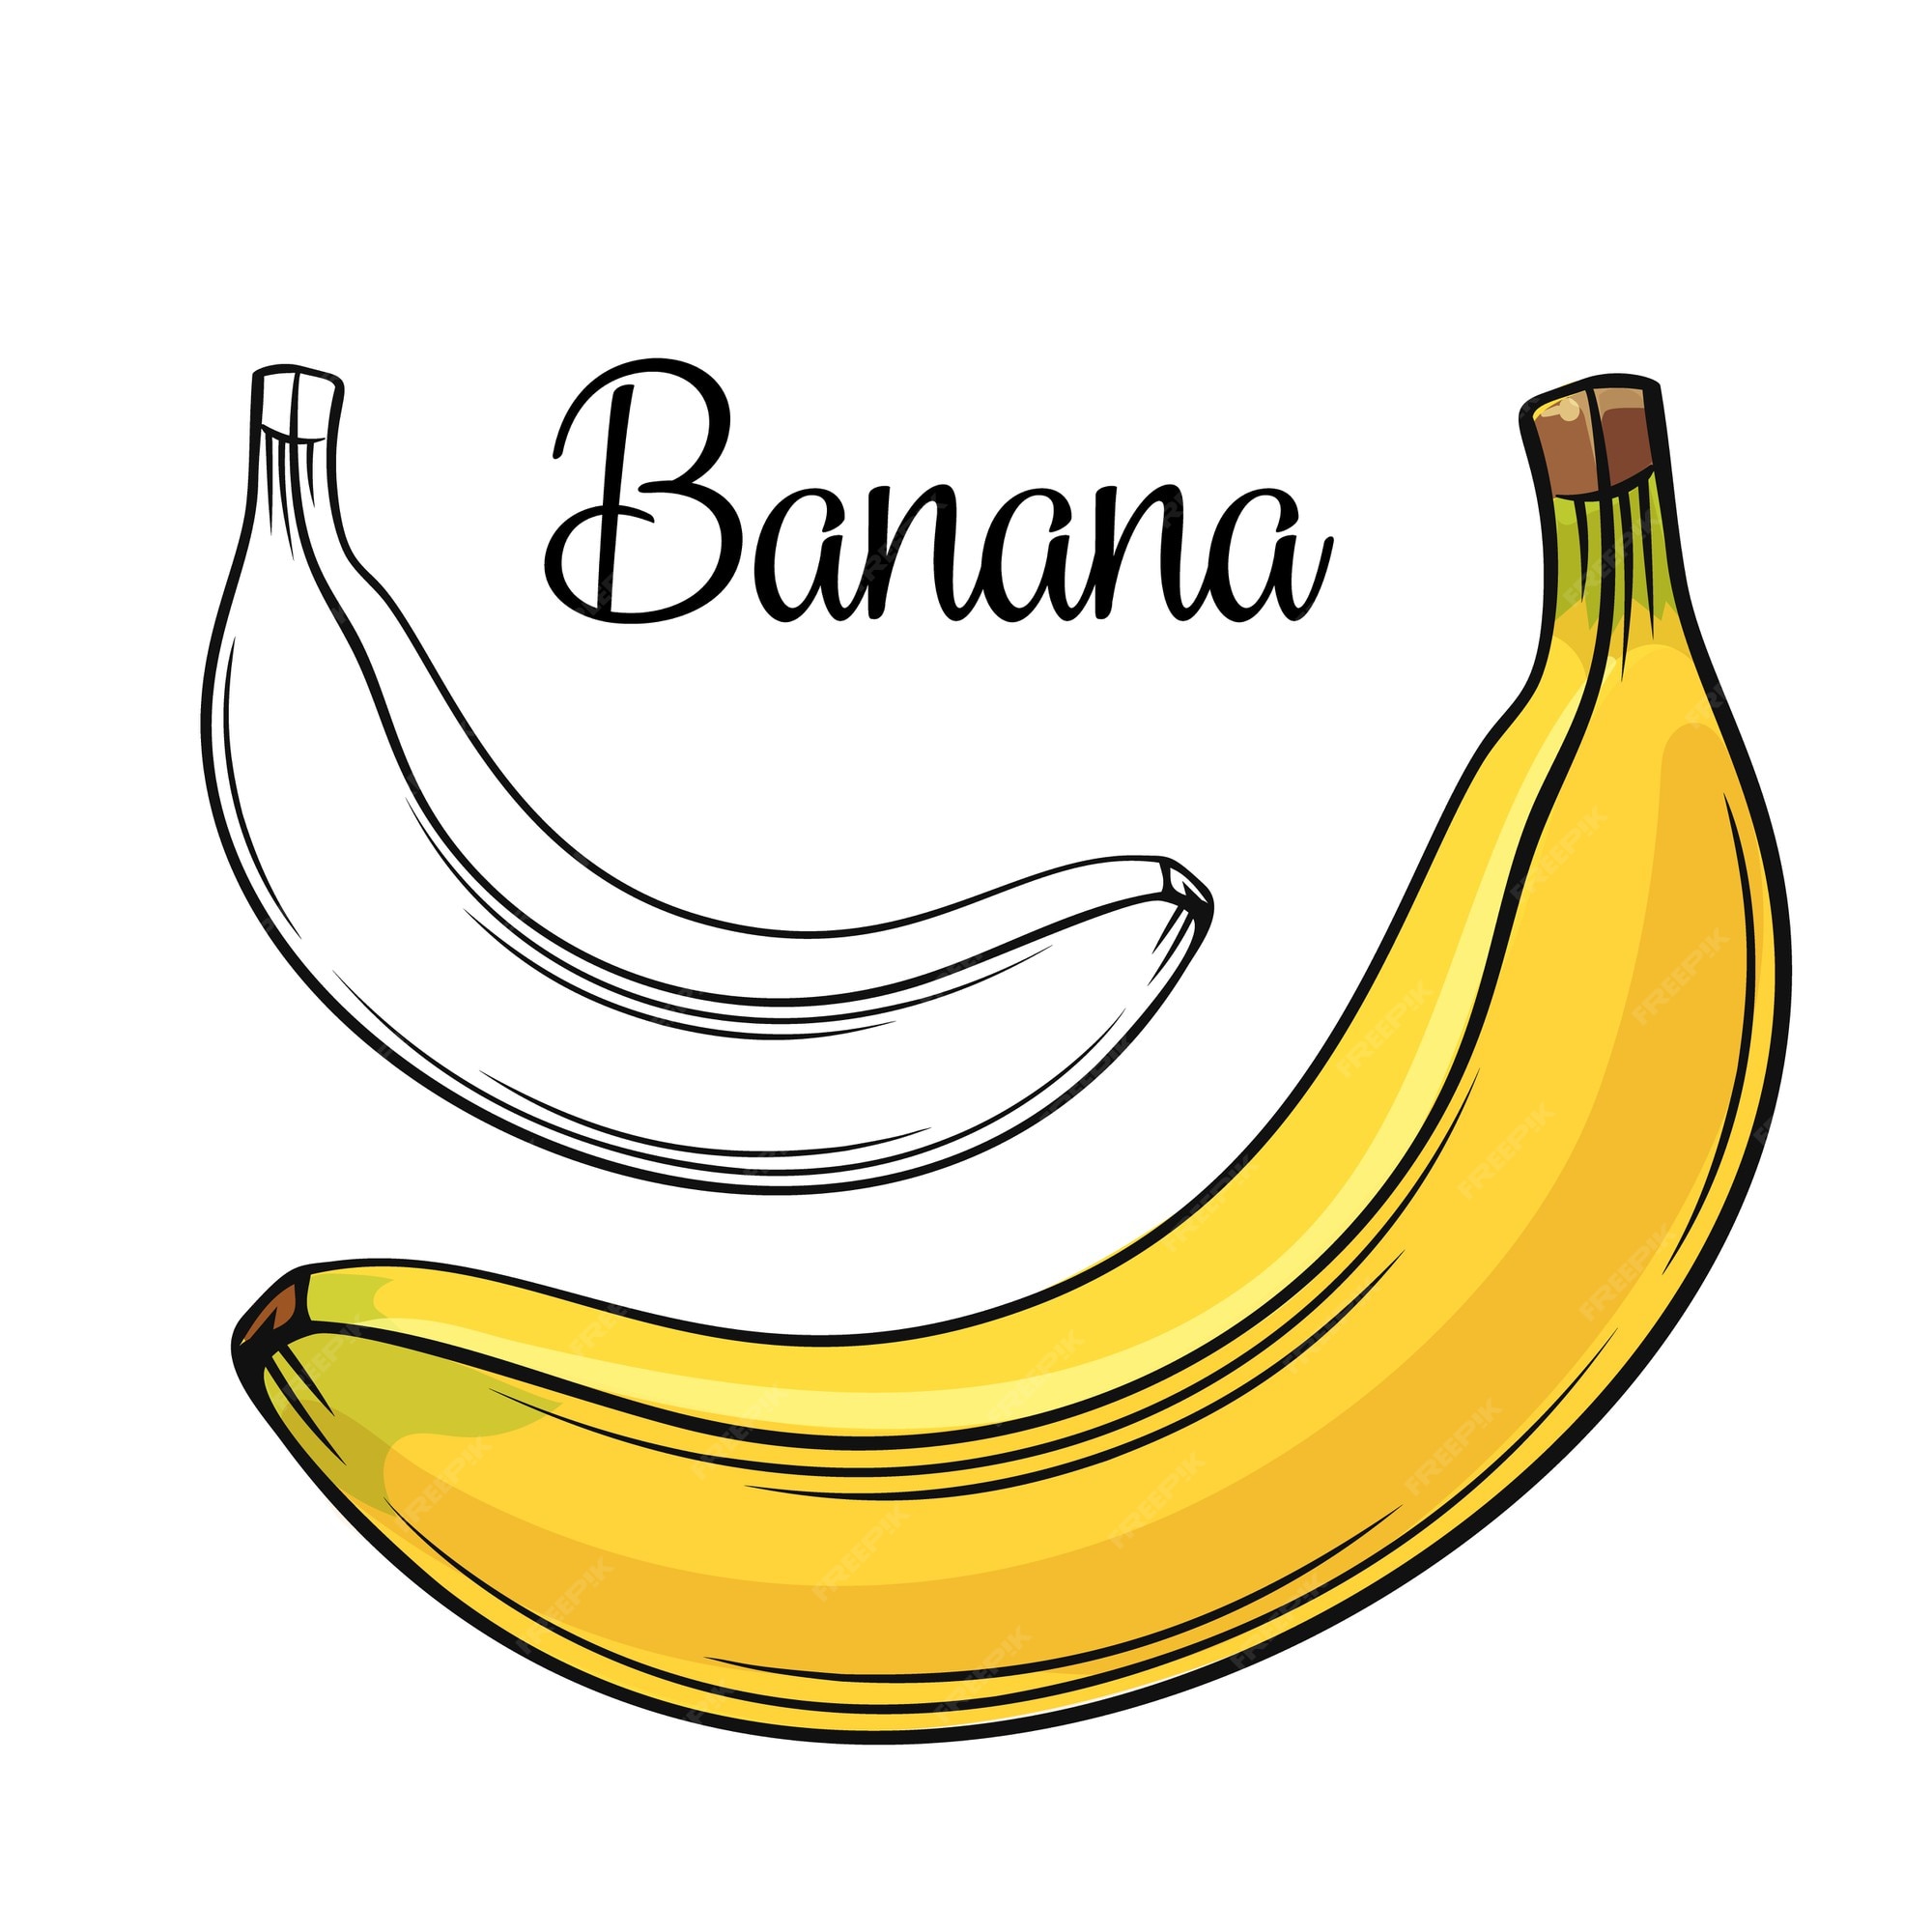 Desenho Banana Imagens – Download Grátis no Freepik